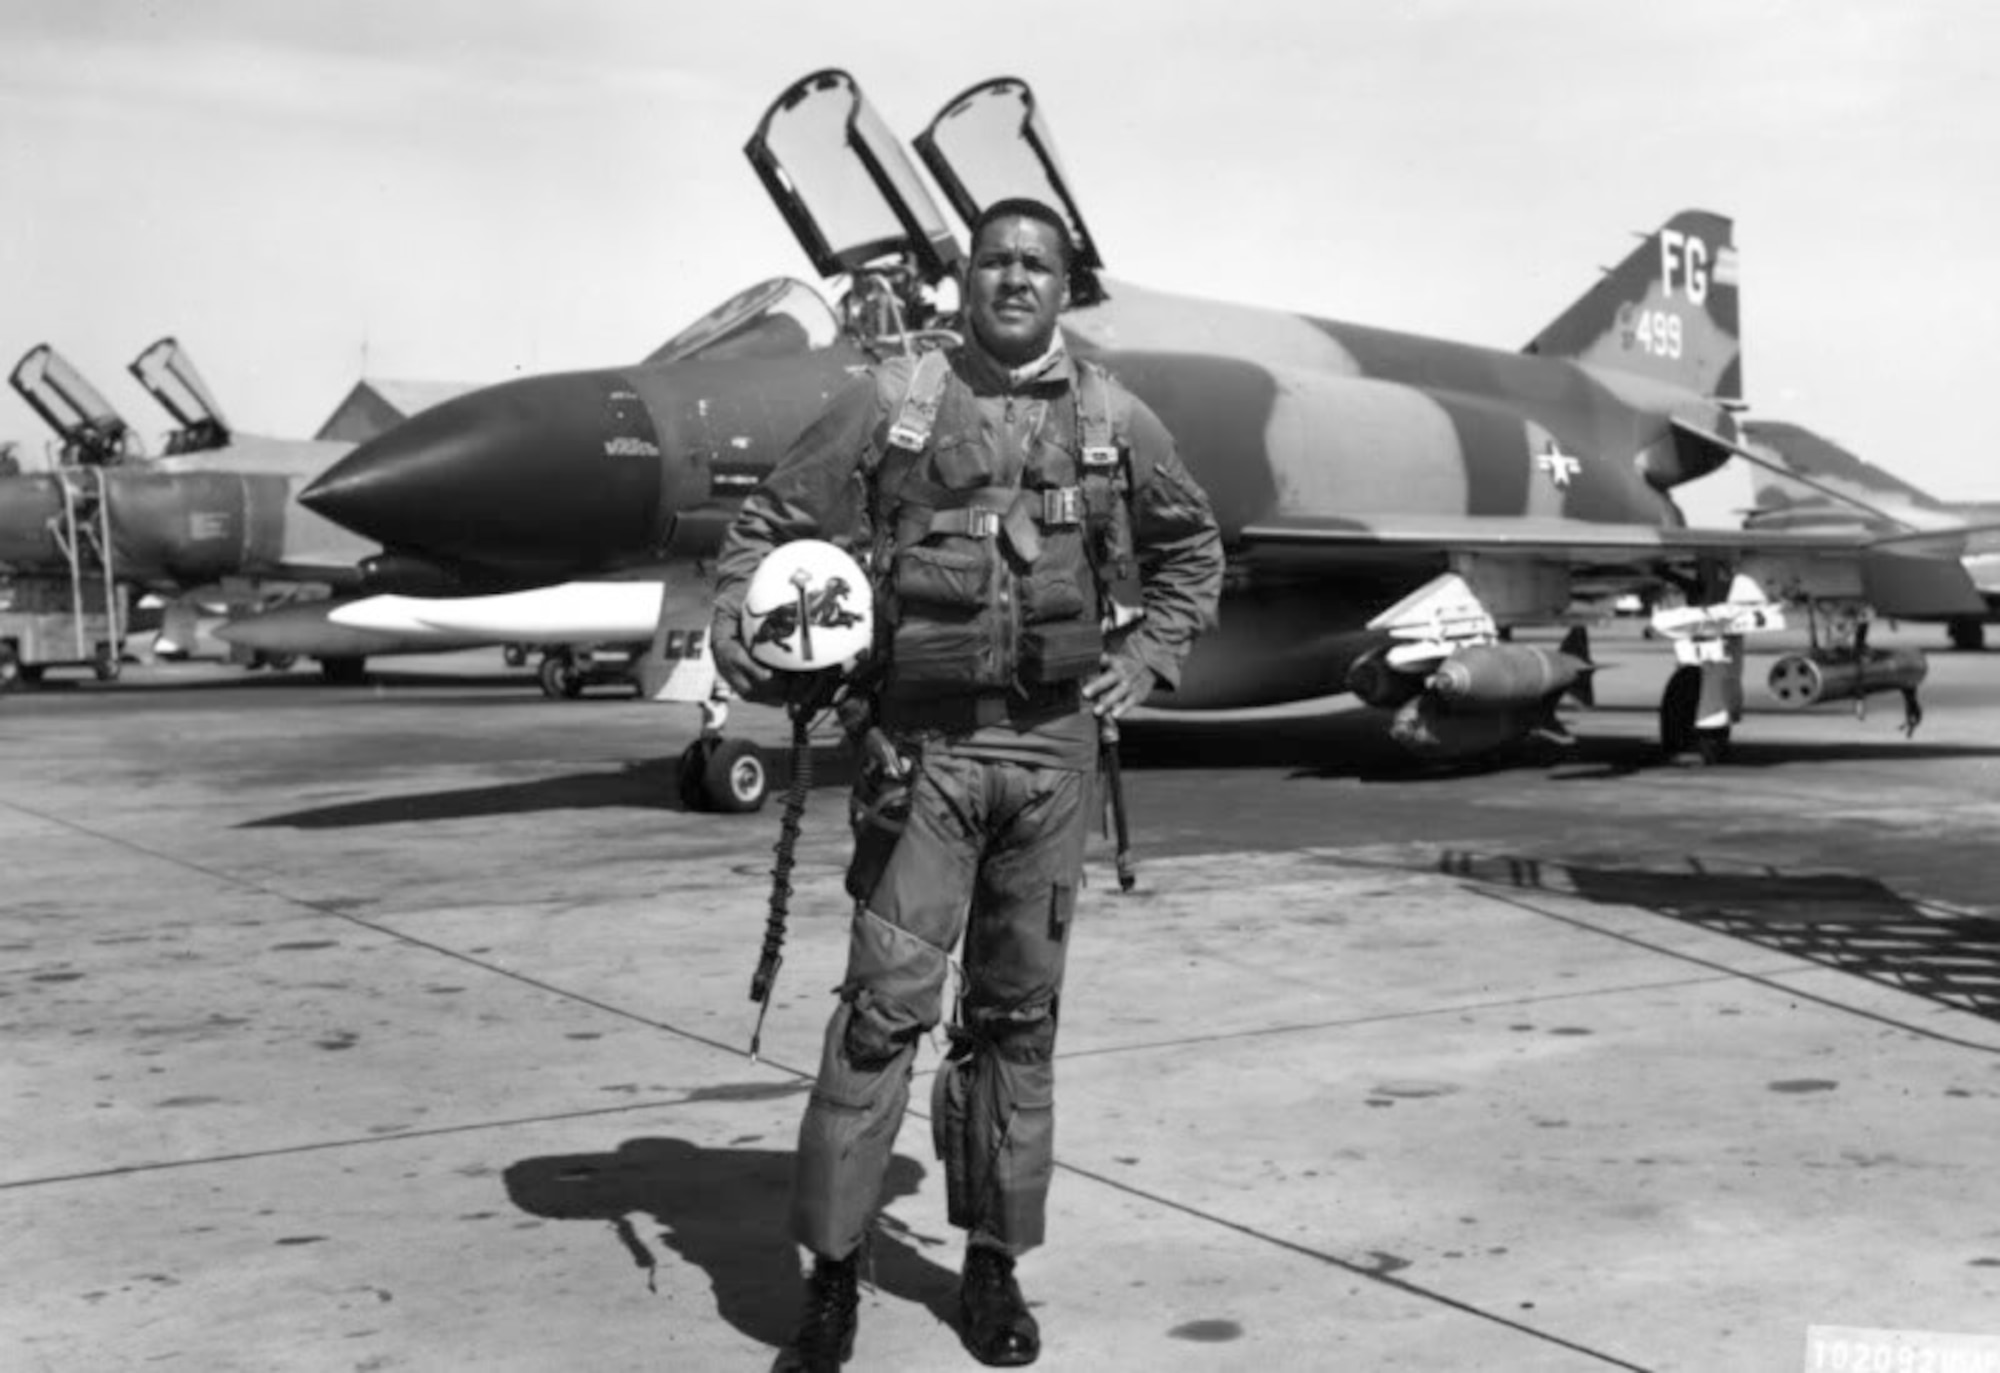 Daniel "Chappie" James Jr. as an F-4 pilot during the Vietnam War.